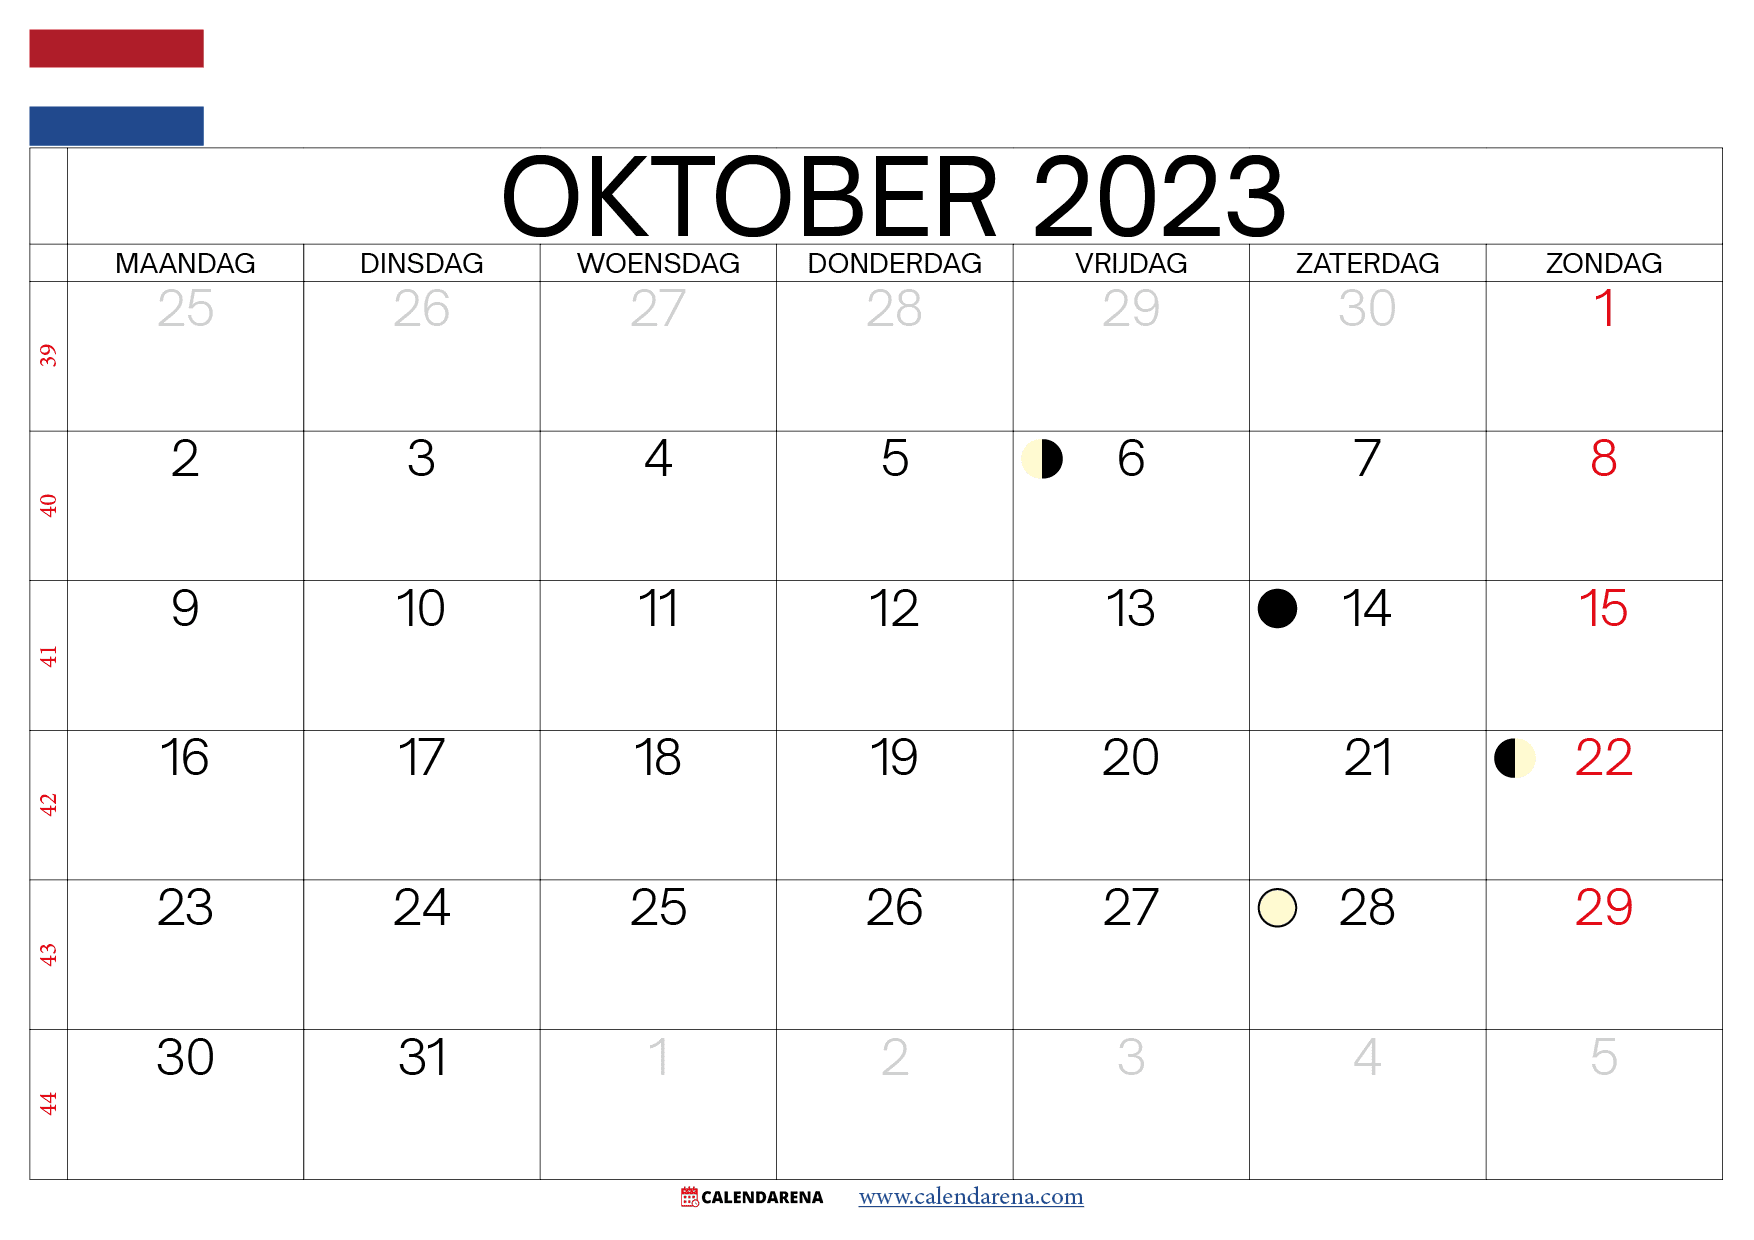 weeknummers Oktober 2023 nederland